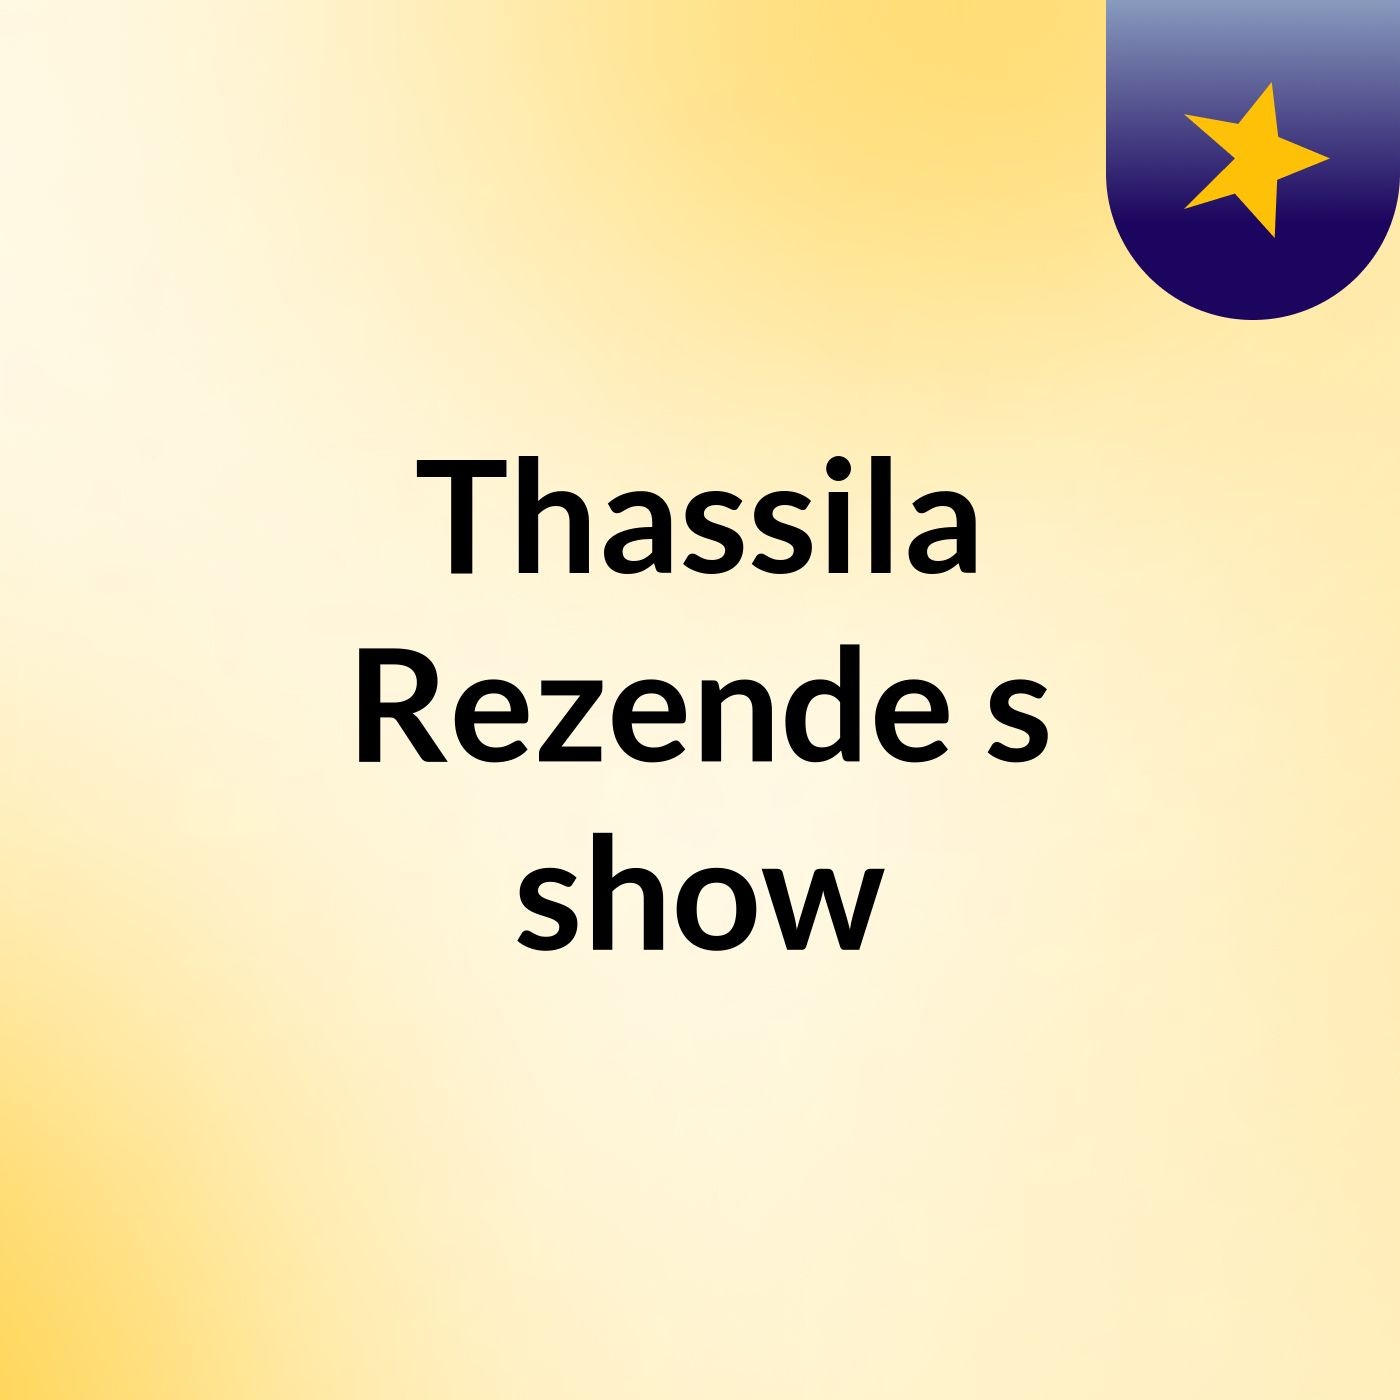 Thassila Rezende's show